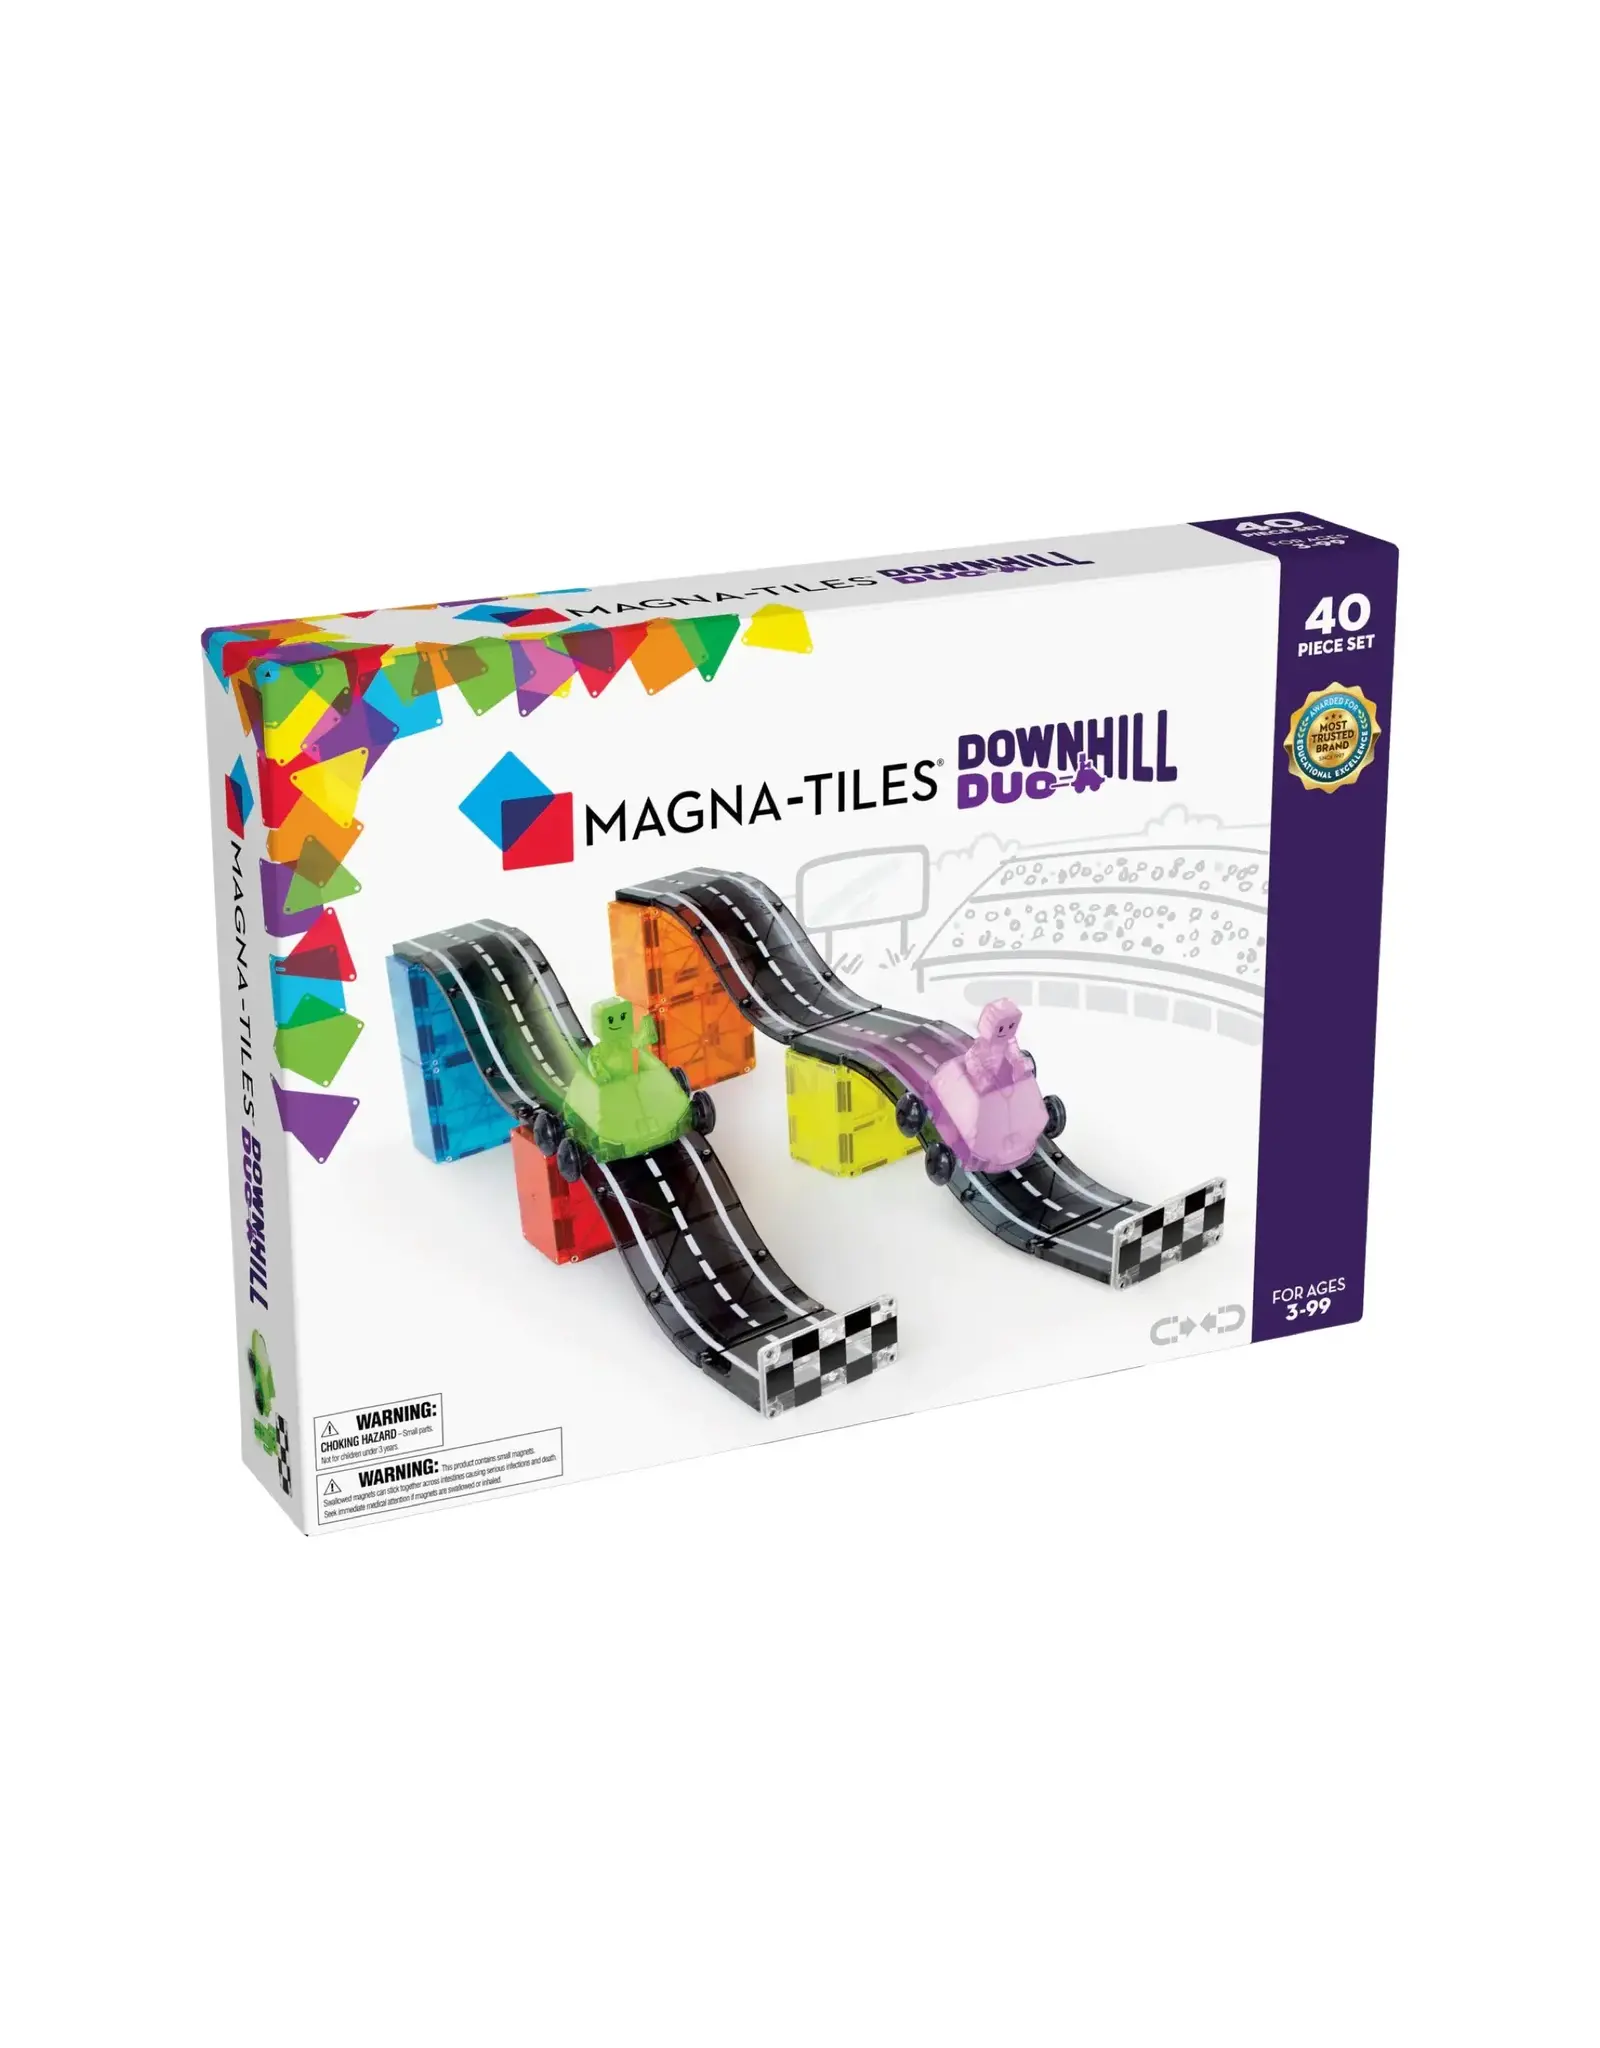 Magna-Tiles Magna-Tiles Downhill Duo 40-Piece Set